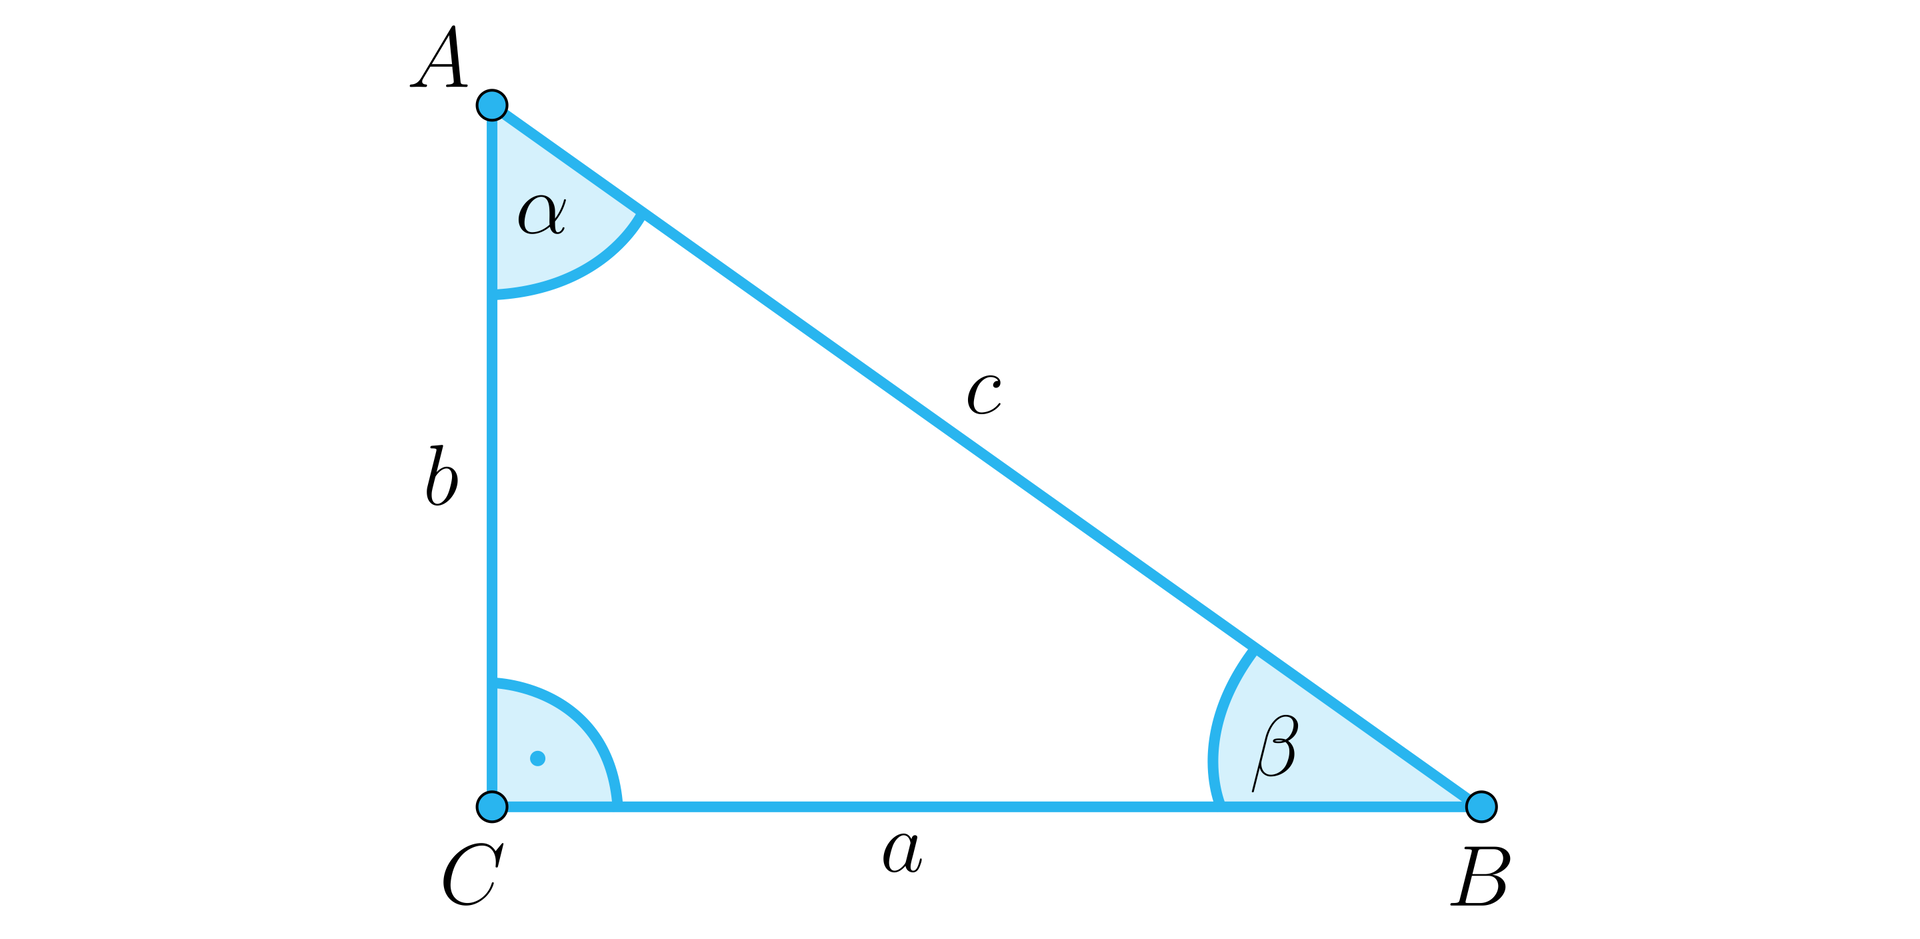 Rysunek przedstawia trójkąt prostokątny o podstawie a, która jest jednocześnie bokiem CB, o pionowej przyprostokątnej b, która jest bokiem AC oraz o przeciwprostokątnej c, która jest bokiem BA. Na ilustracji zaznaczono kąty wewnętrze trójkąta. Przy wierzchołku C znajduje się kąt prosty, przy wierzchołku B znajduje się kąt β, a przy wierzchołku A znajduje się kąt α.